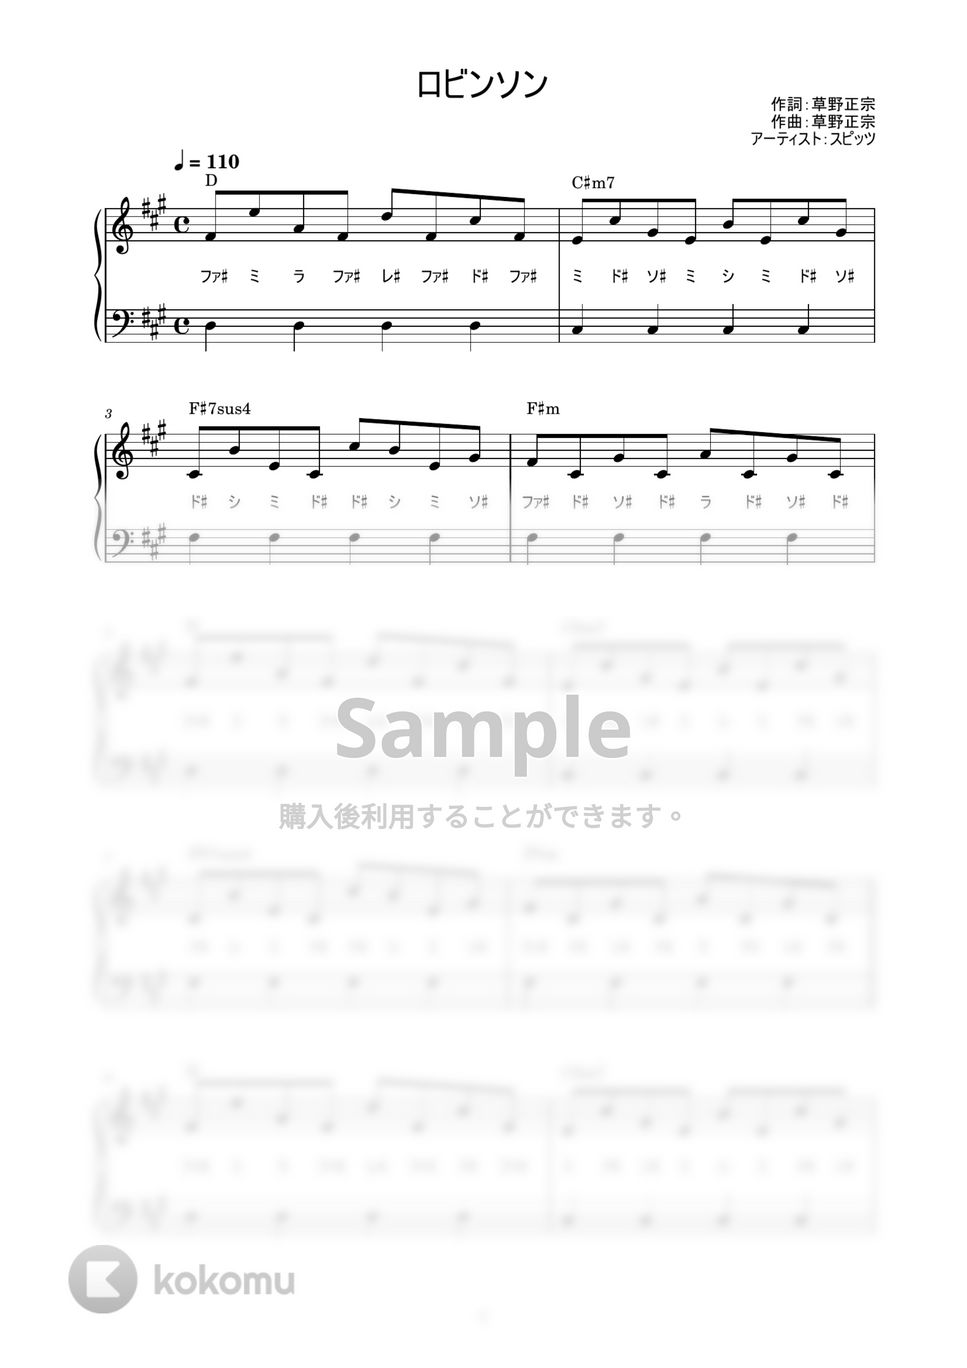 スピッツ - ロビンソン (かんたん / 歌詞付き / ドレミ付き / 初心者) by piano.tokyo